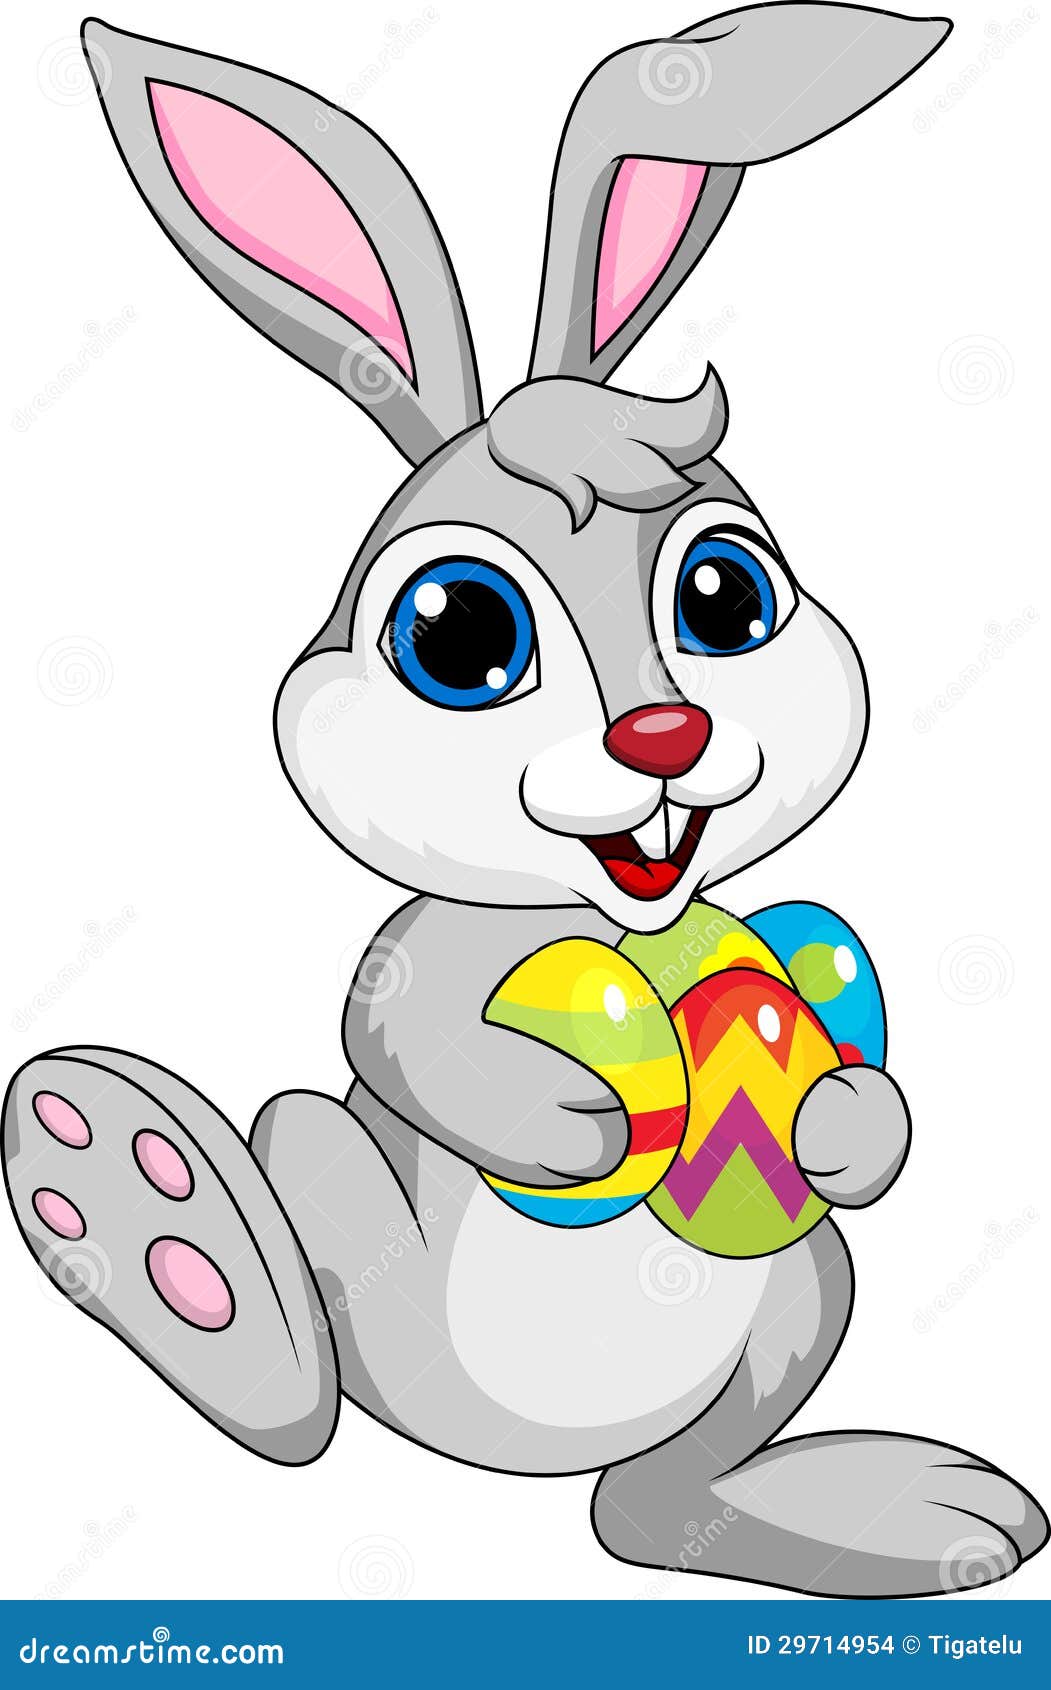 Картинки зайцев для детей. Пасхальный зайчик для детей. Цветной заяц для детей. Пасхальный кролик мультяшный. Цветные зайчики.